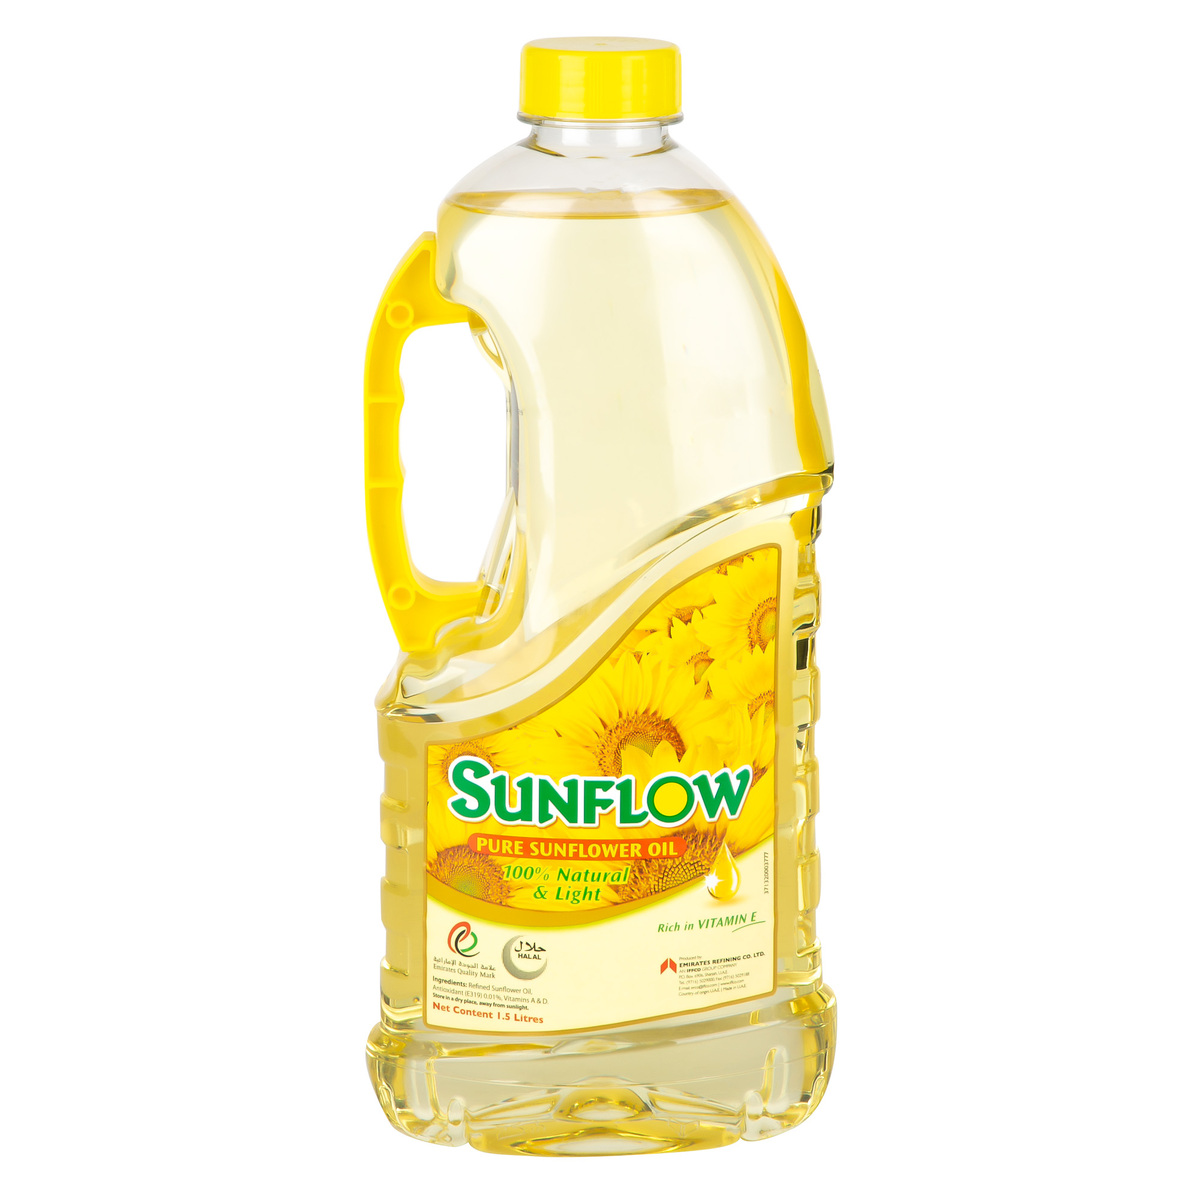 Sunflow Sunflower Oil 1.5 Lt | Wholesale | Tradeling